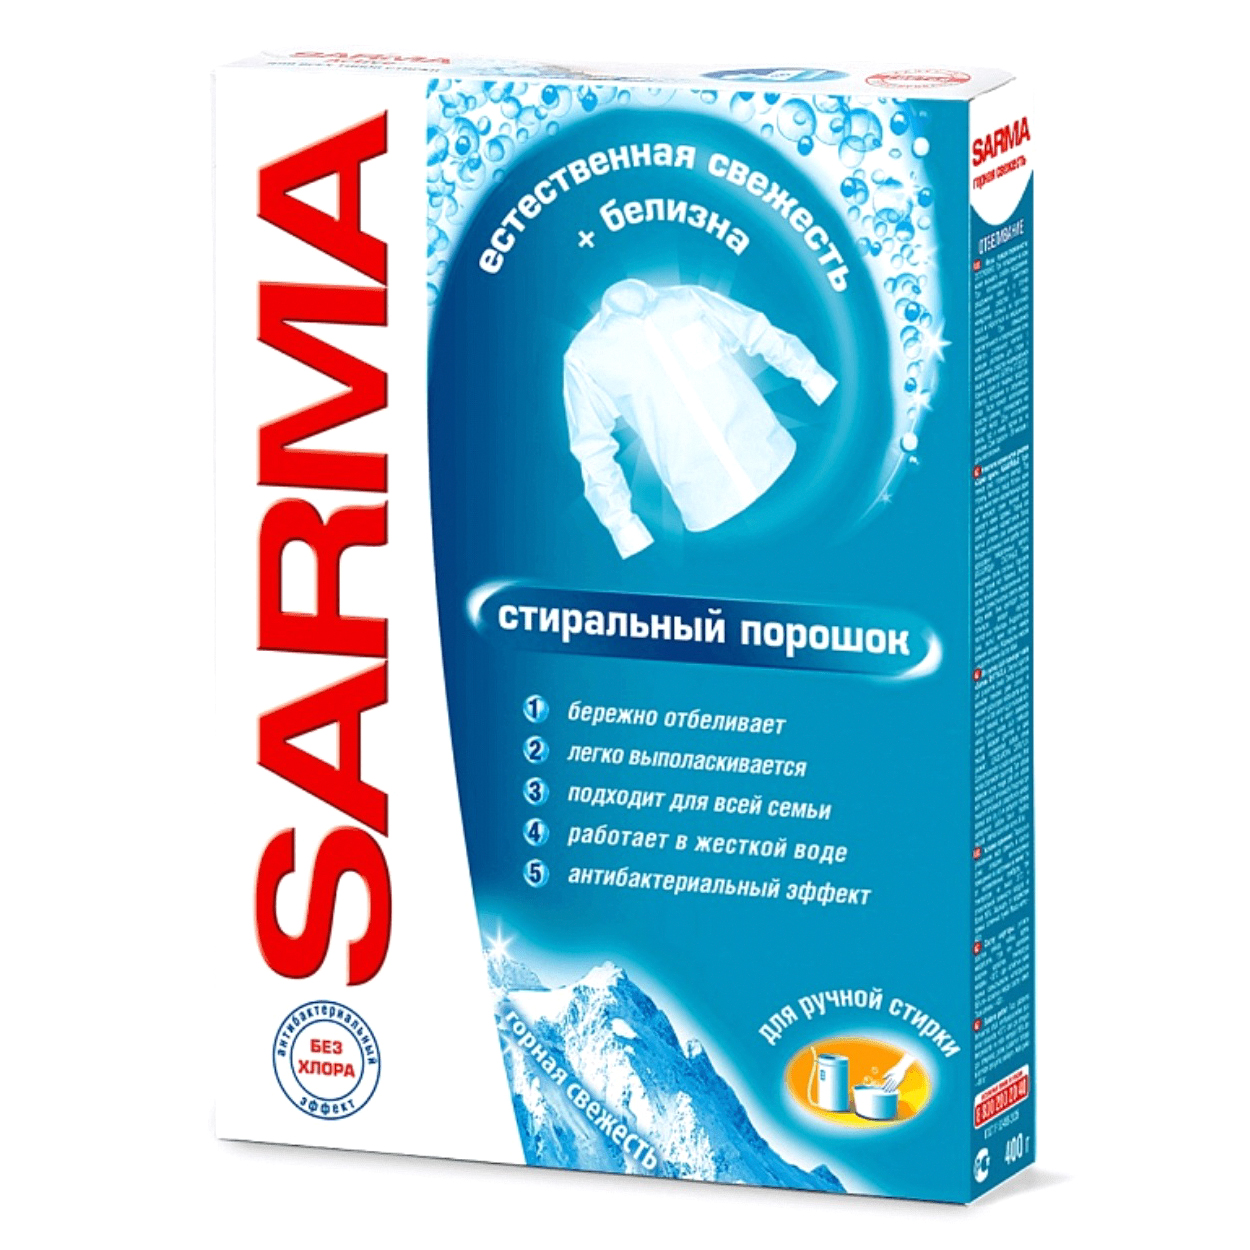 Стиральный порошок Sarma универсальный 400 г стиральный порошок sarma актив ландыш 4 5 кг